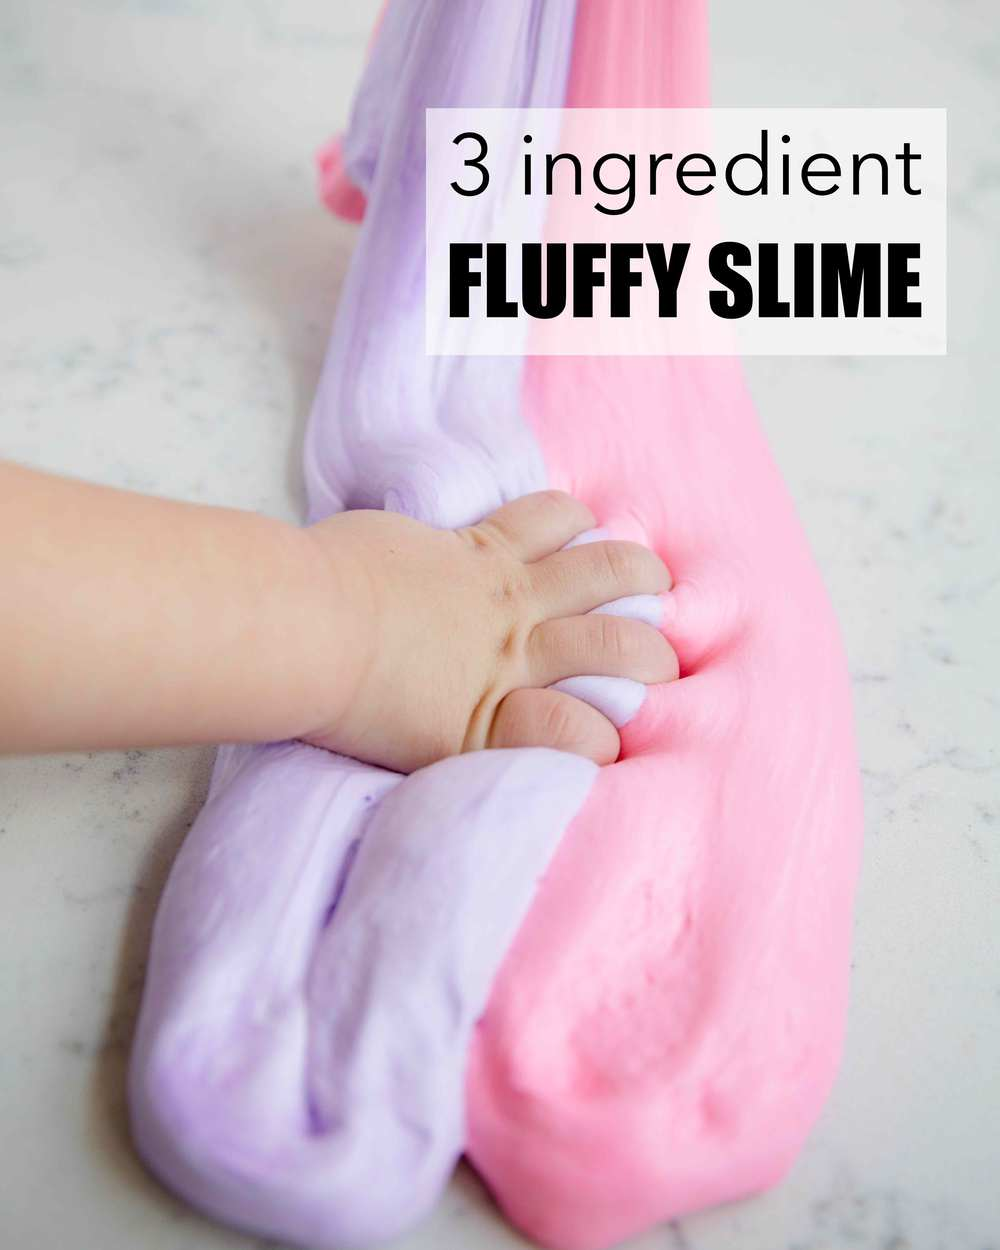 19 diy Slime ingredients ideas